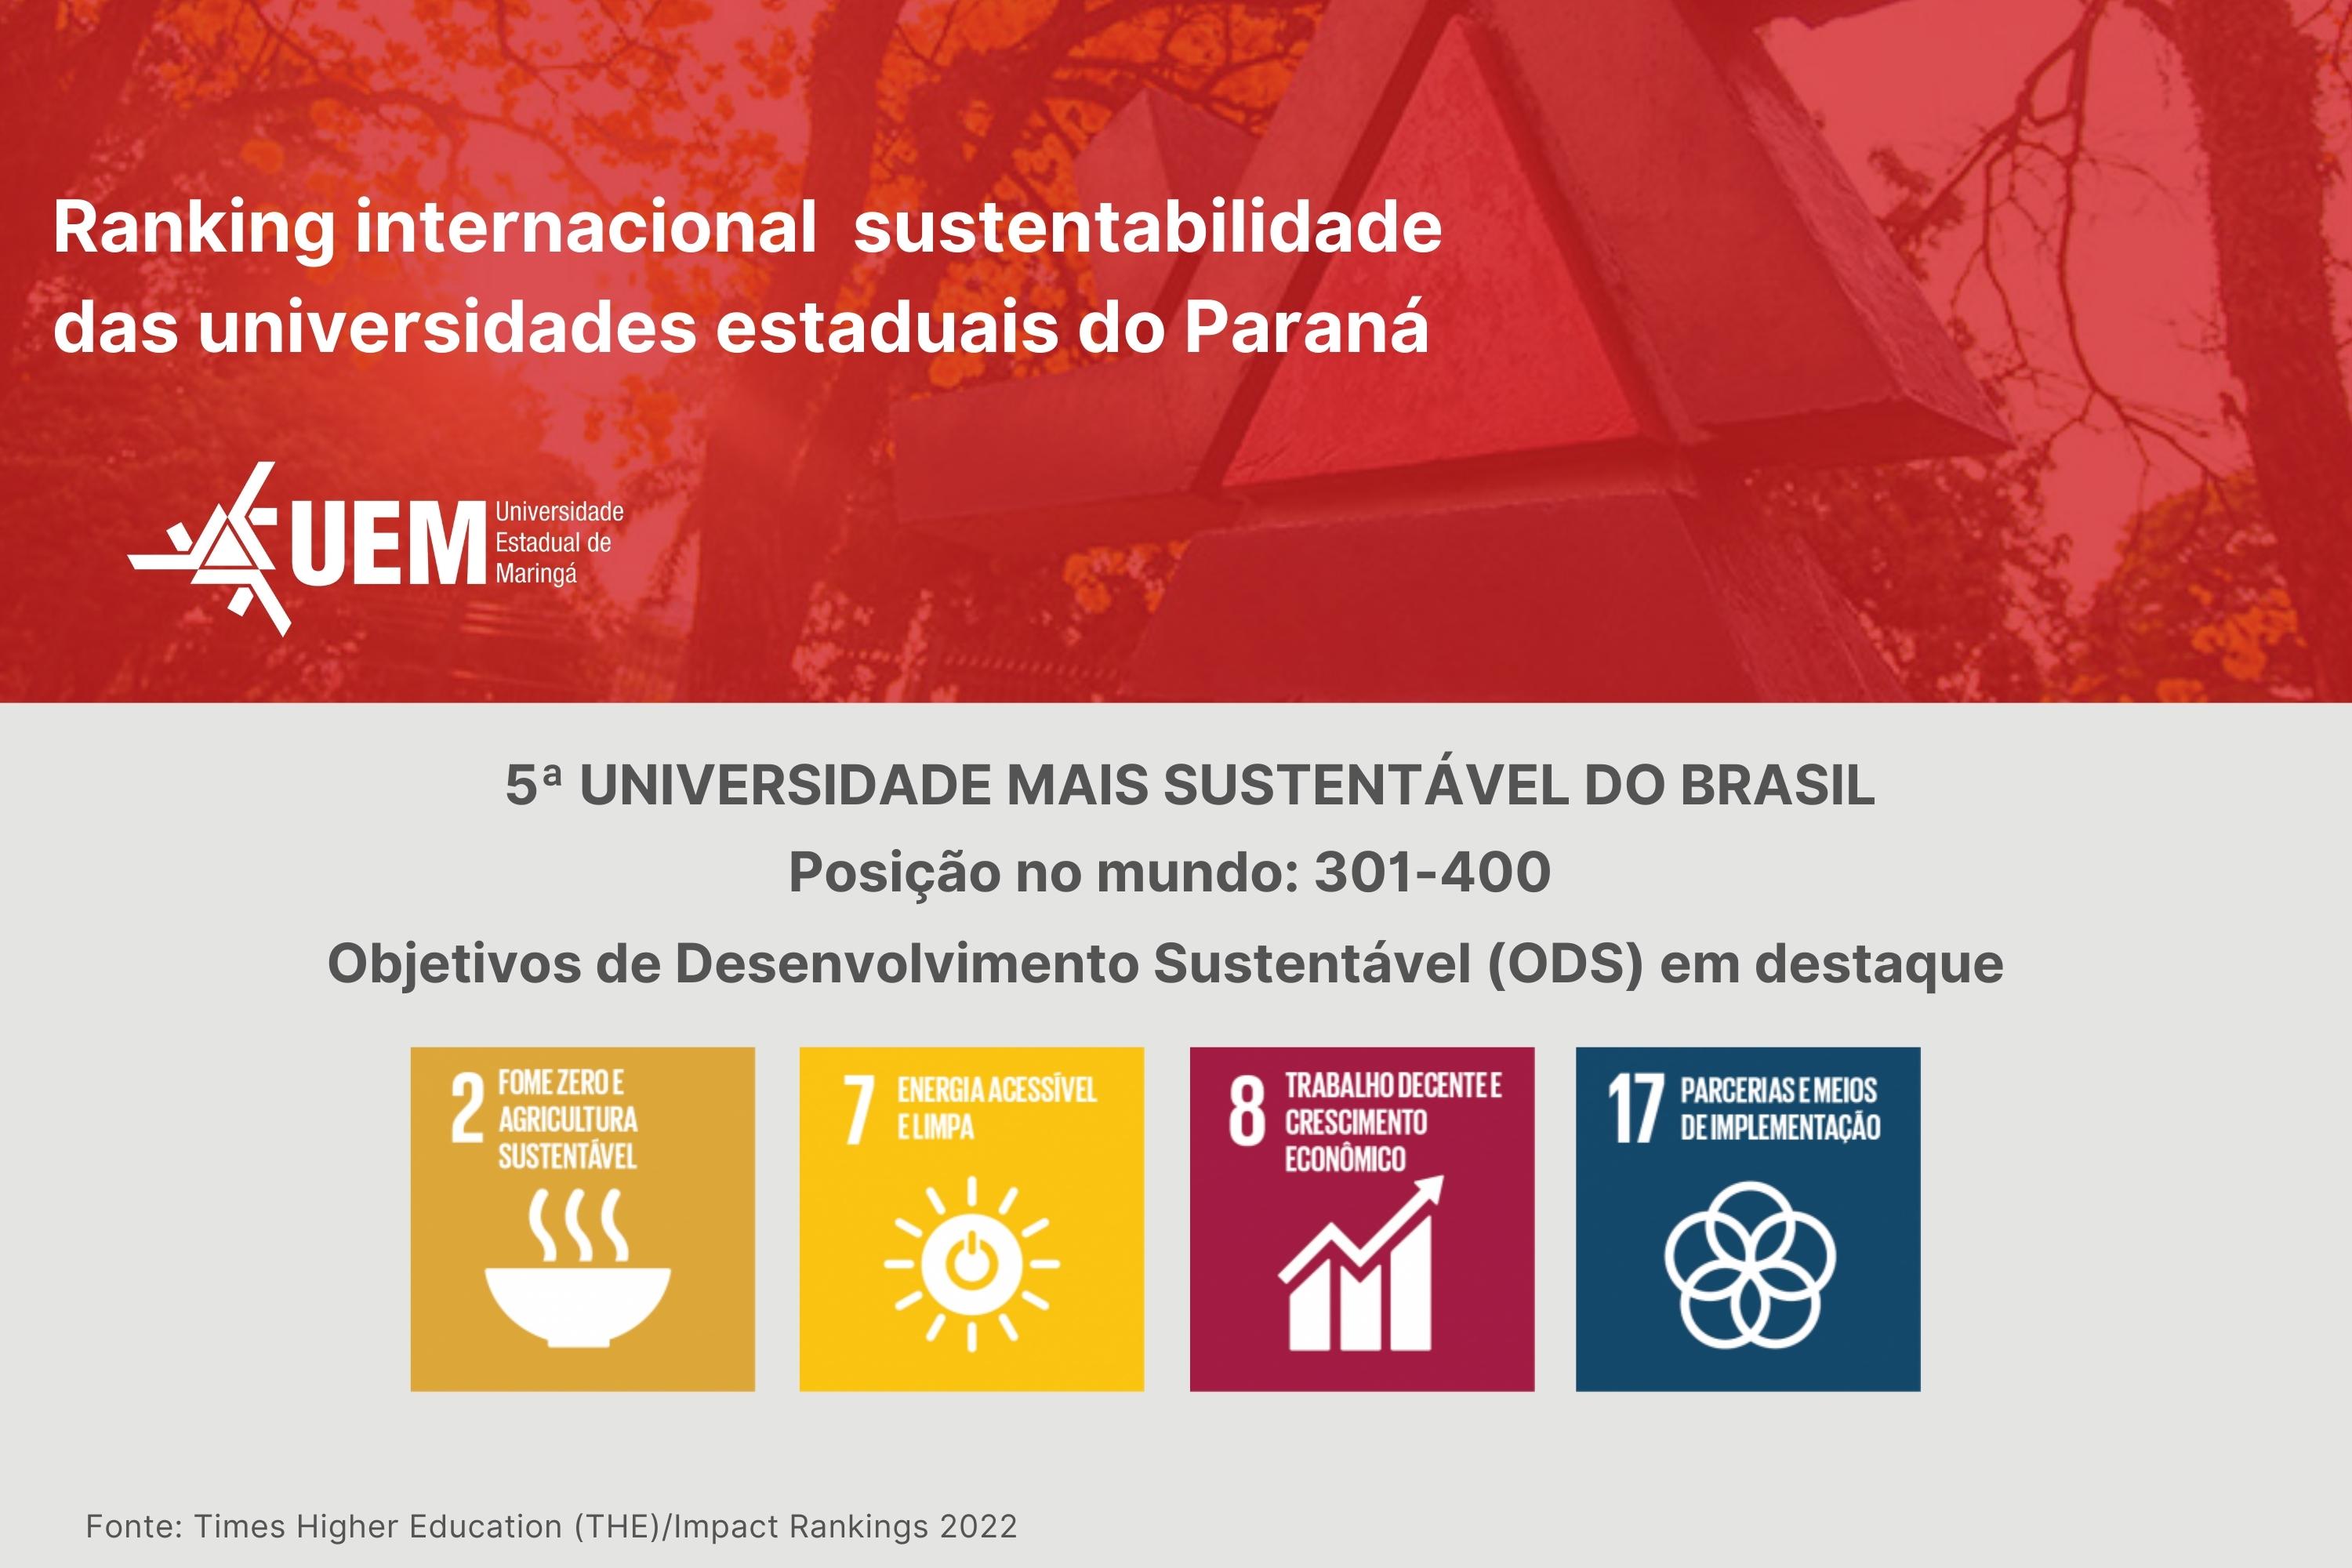 Ranking internacional posiciona a UEM como a 5ª universidade mais sustentável do Brasil